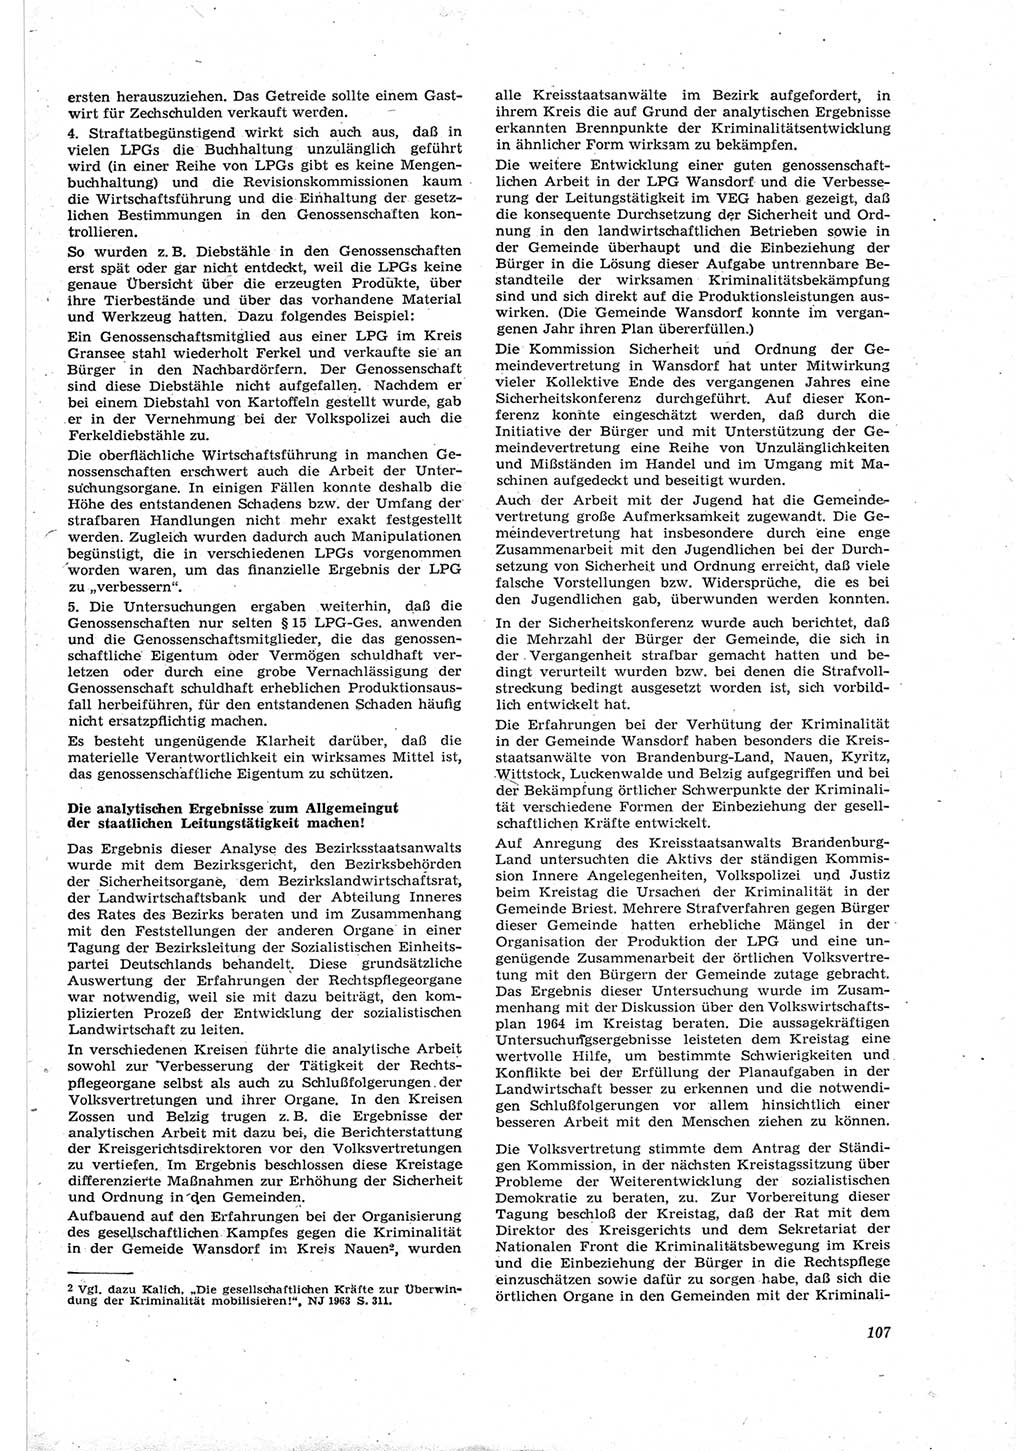 Neue Justiz (NJ), Zeitschrift für Recht und Rechtswissenschaft [Deutsche Demokratische Republik (DDR)], 18. Jahrgang 1964, Seite 107 (NJ DDR 1964, S. 107)